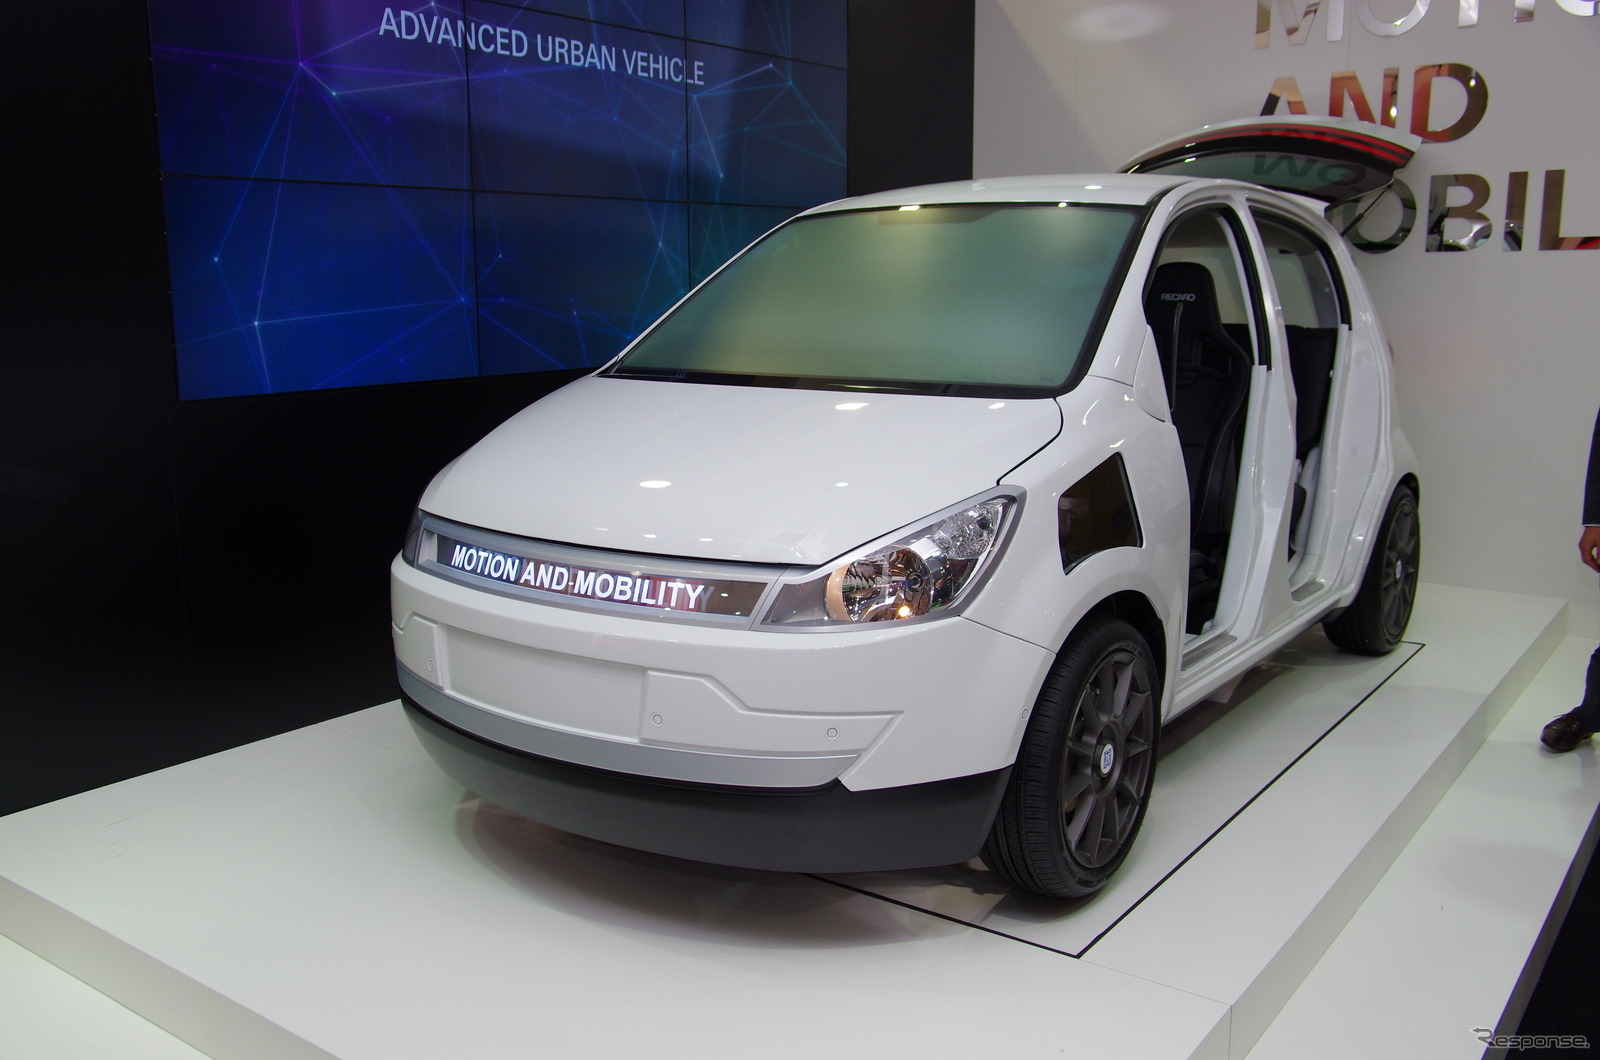 都市型スマートカーの実験車両「AUV（Advanced Urban Vehicle）」